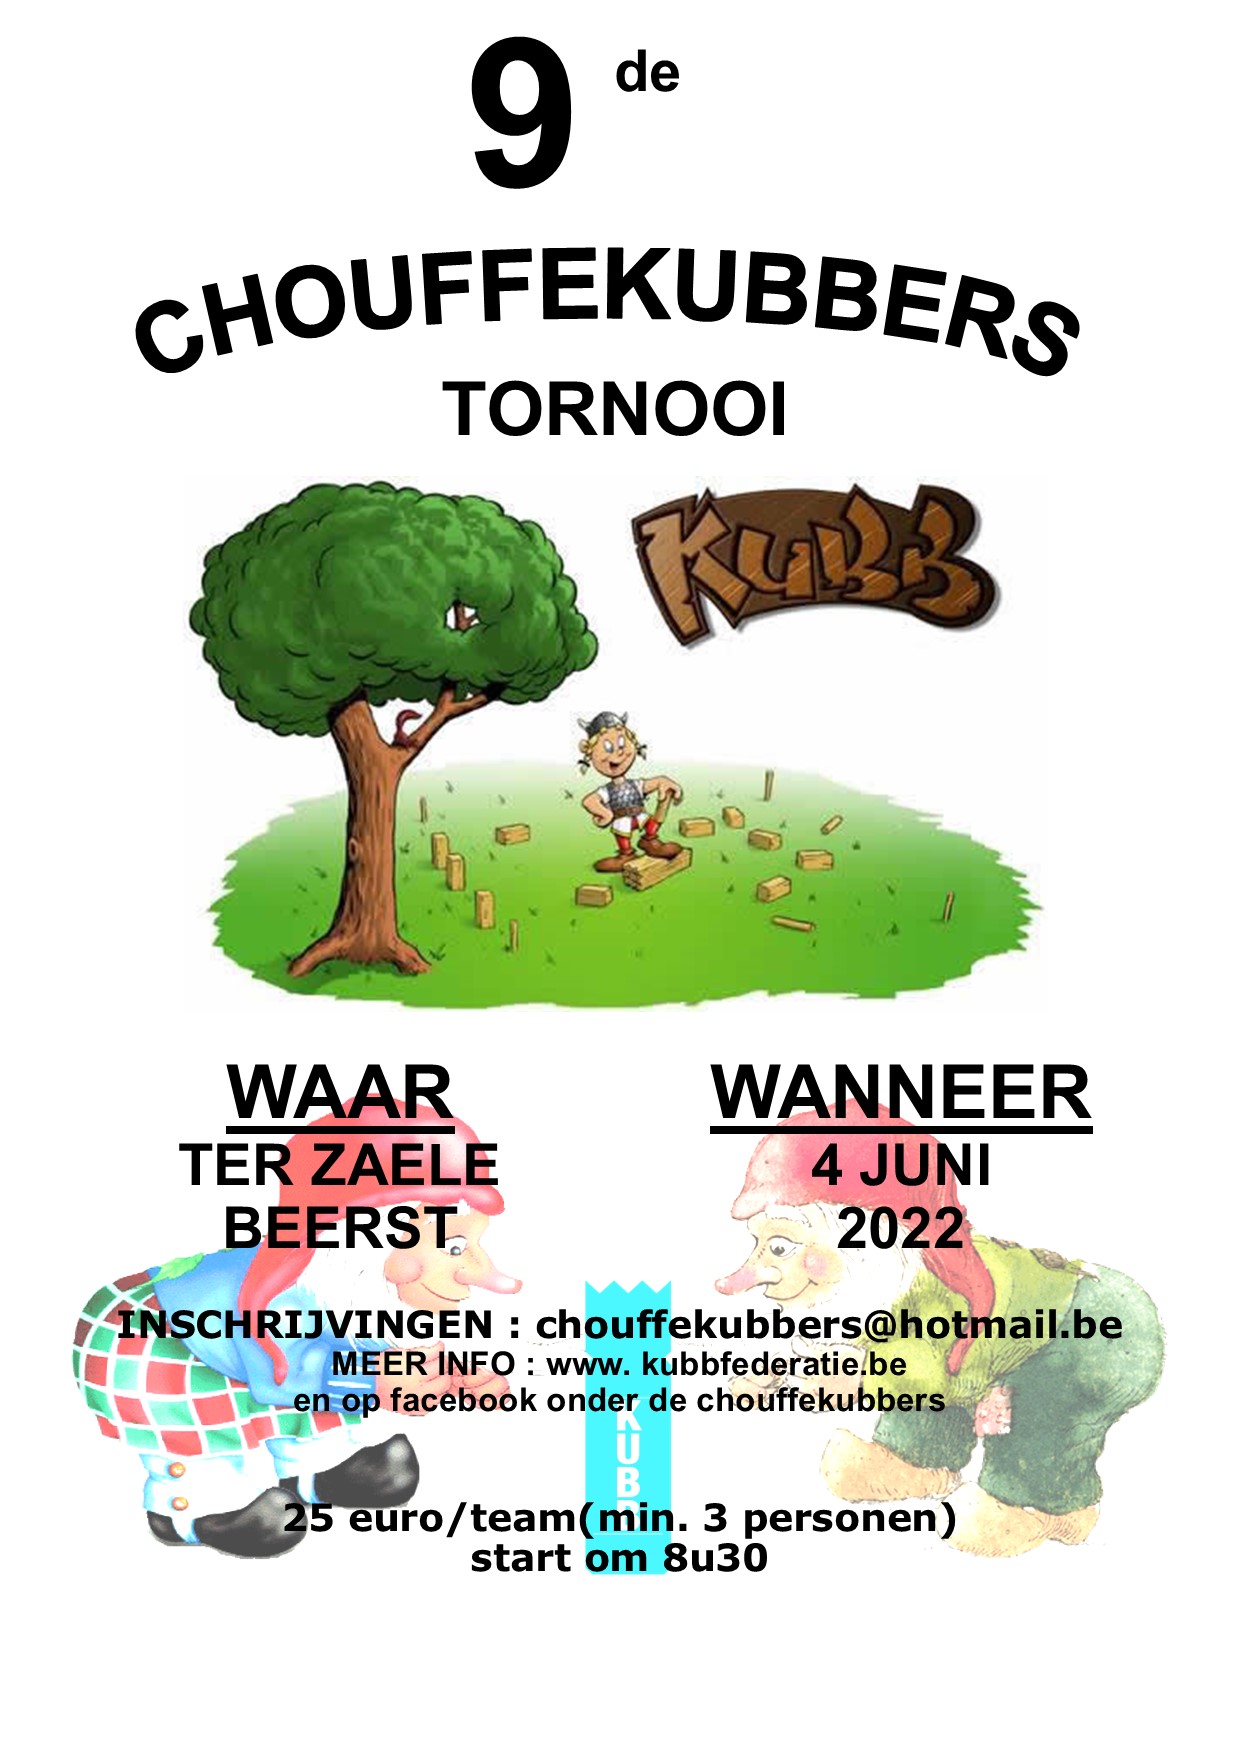 Chouffekubbers Tornooi